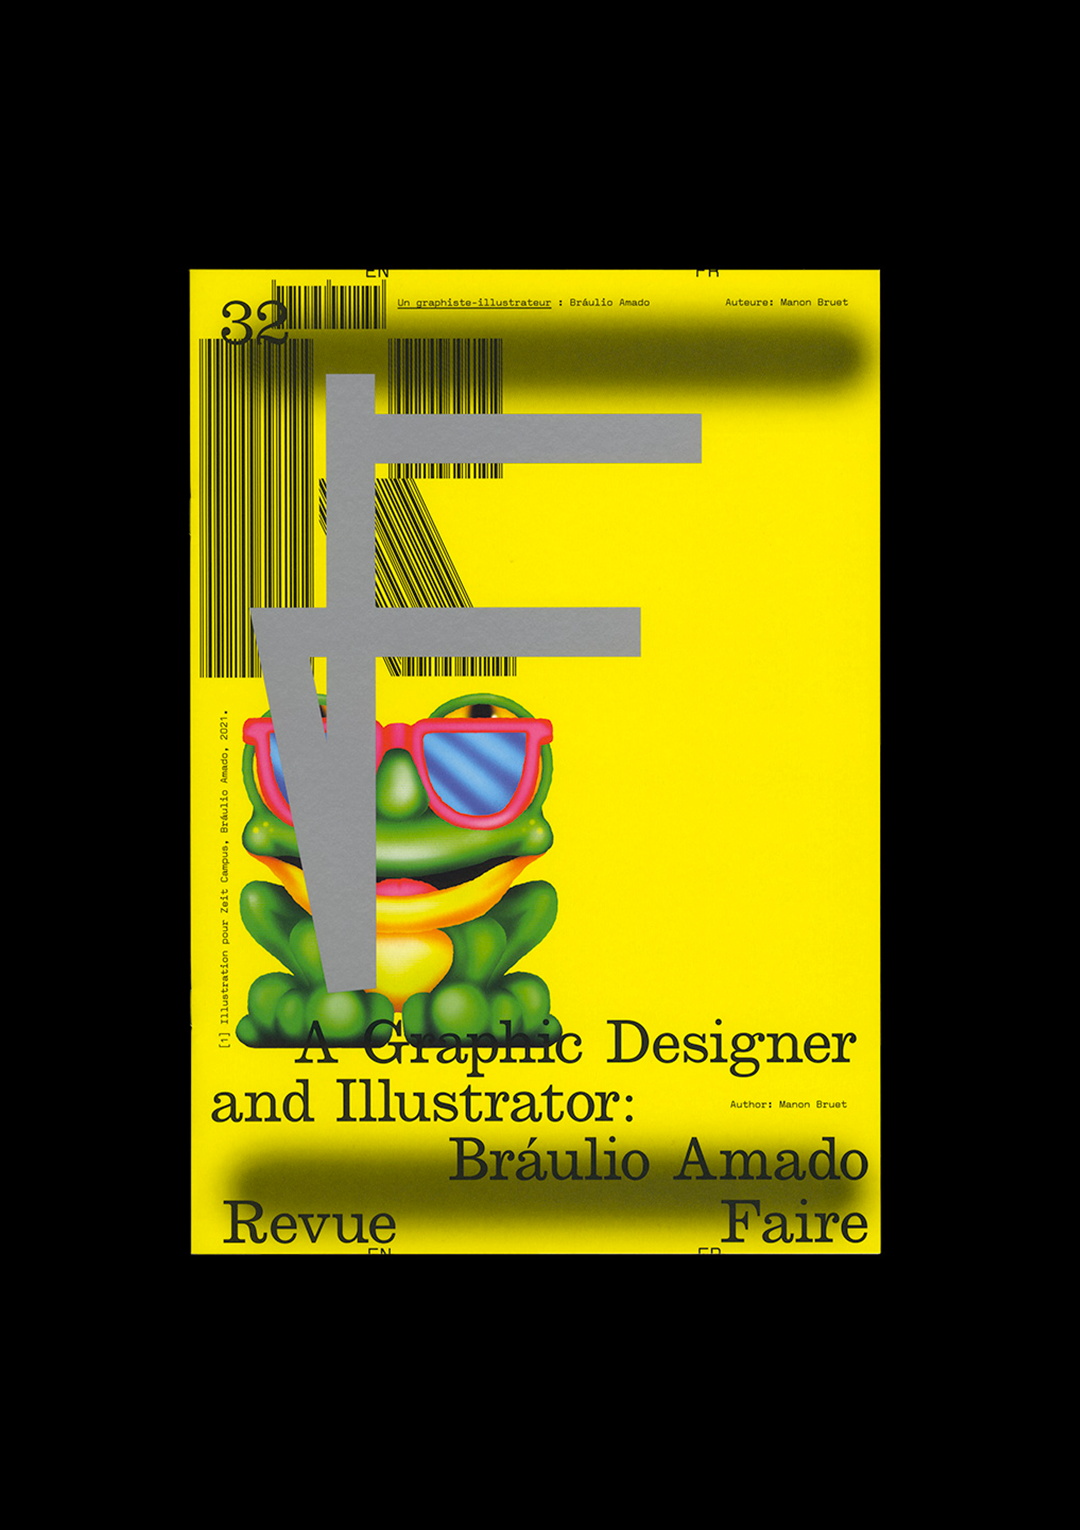 n°32 — A Graphic Designer and Illustrator: Bráulio Amado. Author: Manon Bruet